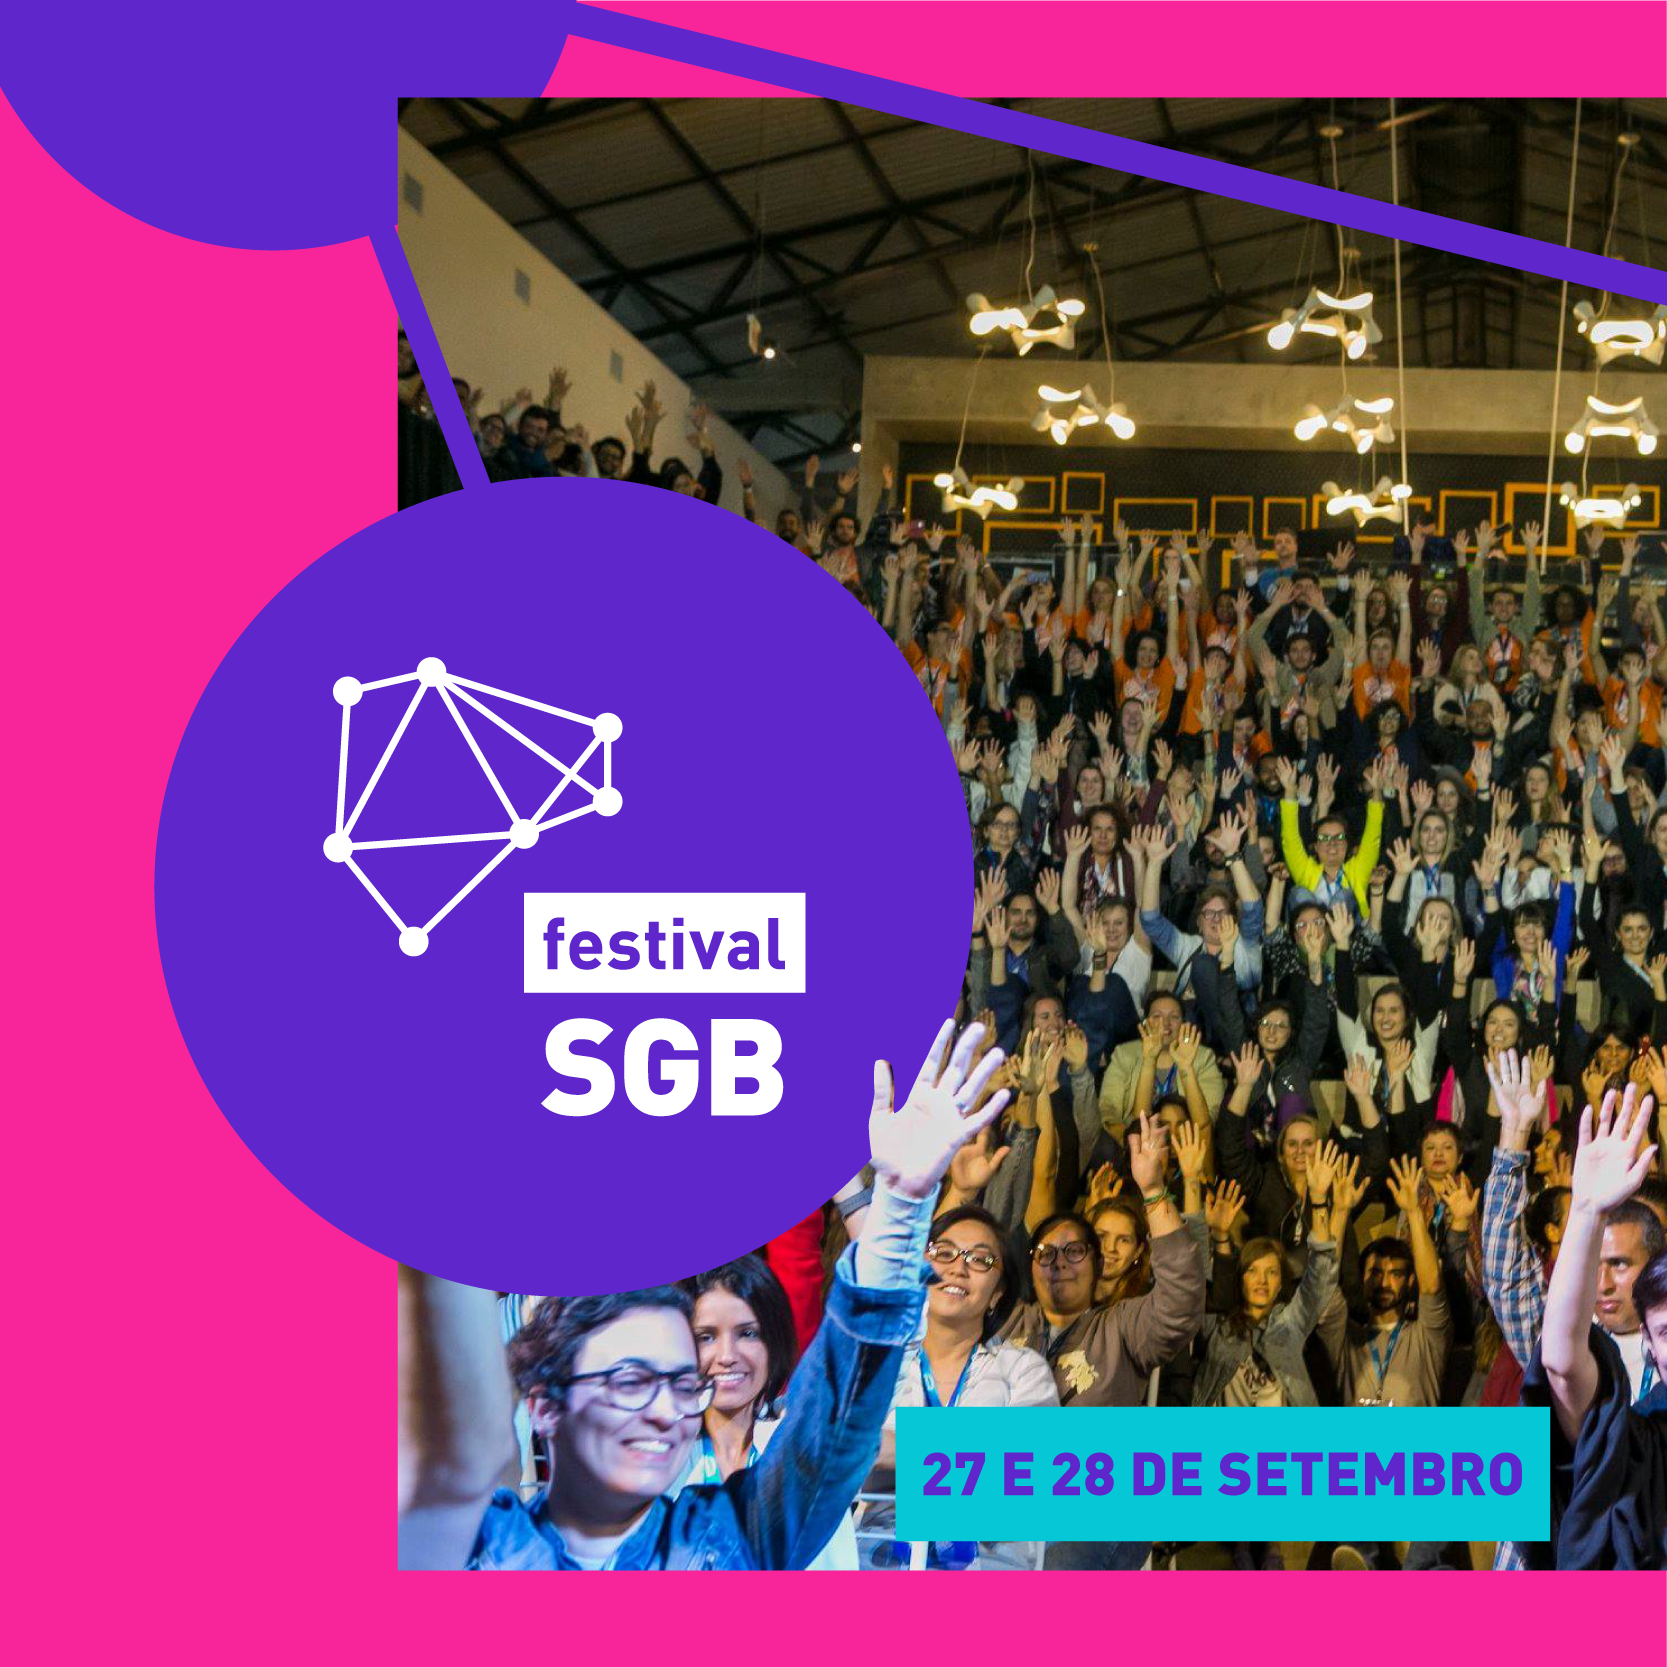 Festival Social Good Brasil Chega à Sua 8ª Edição Em 2019